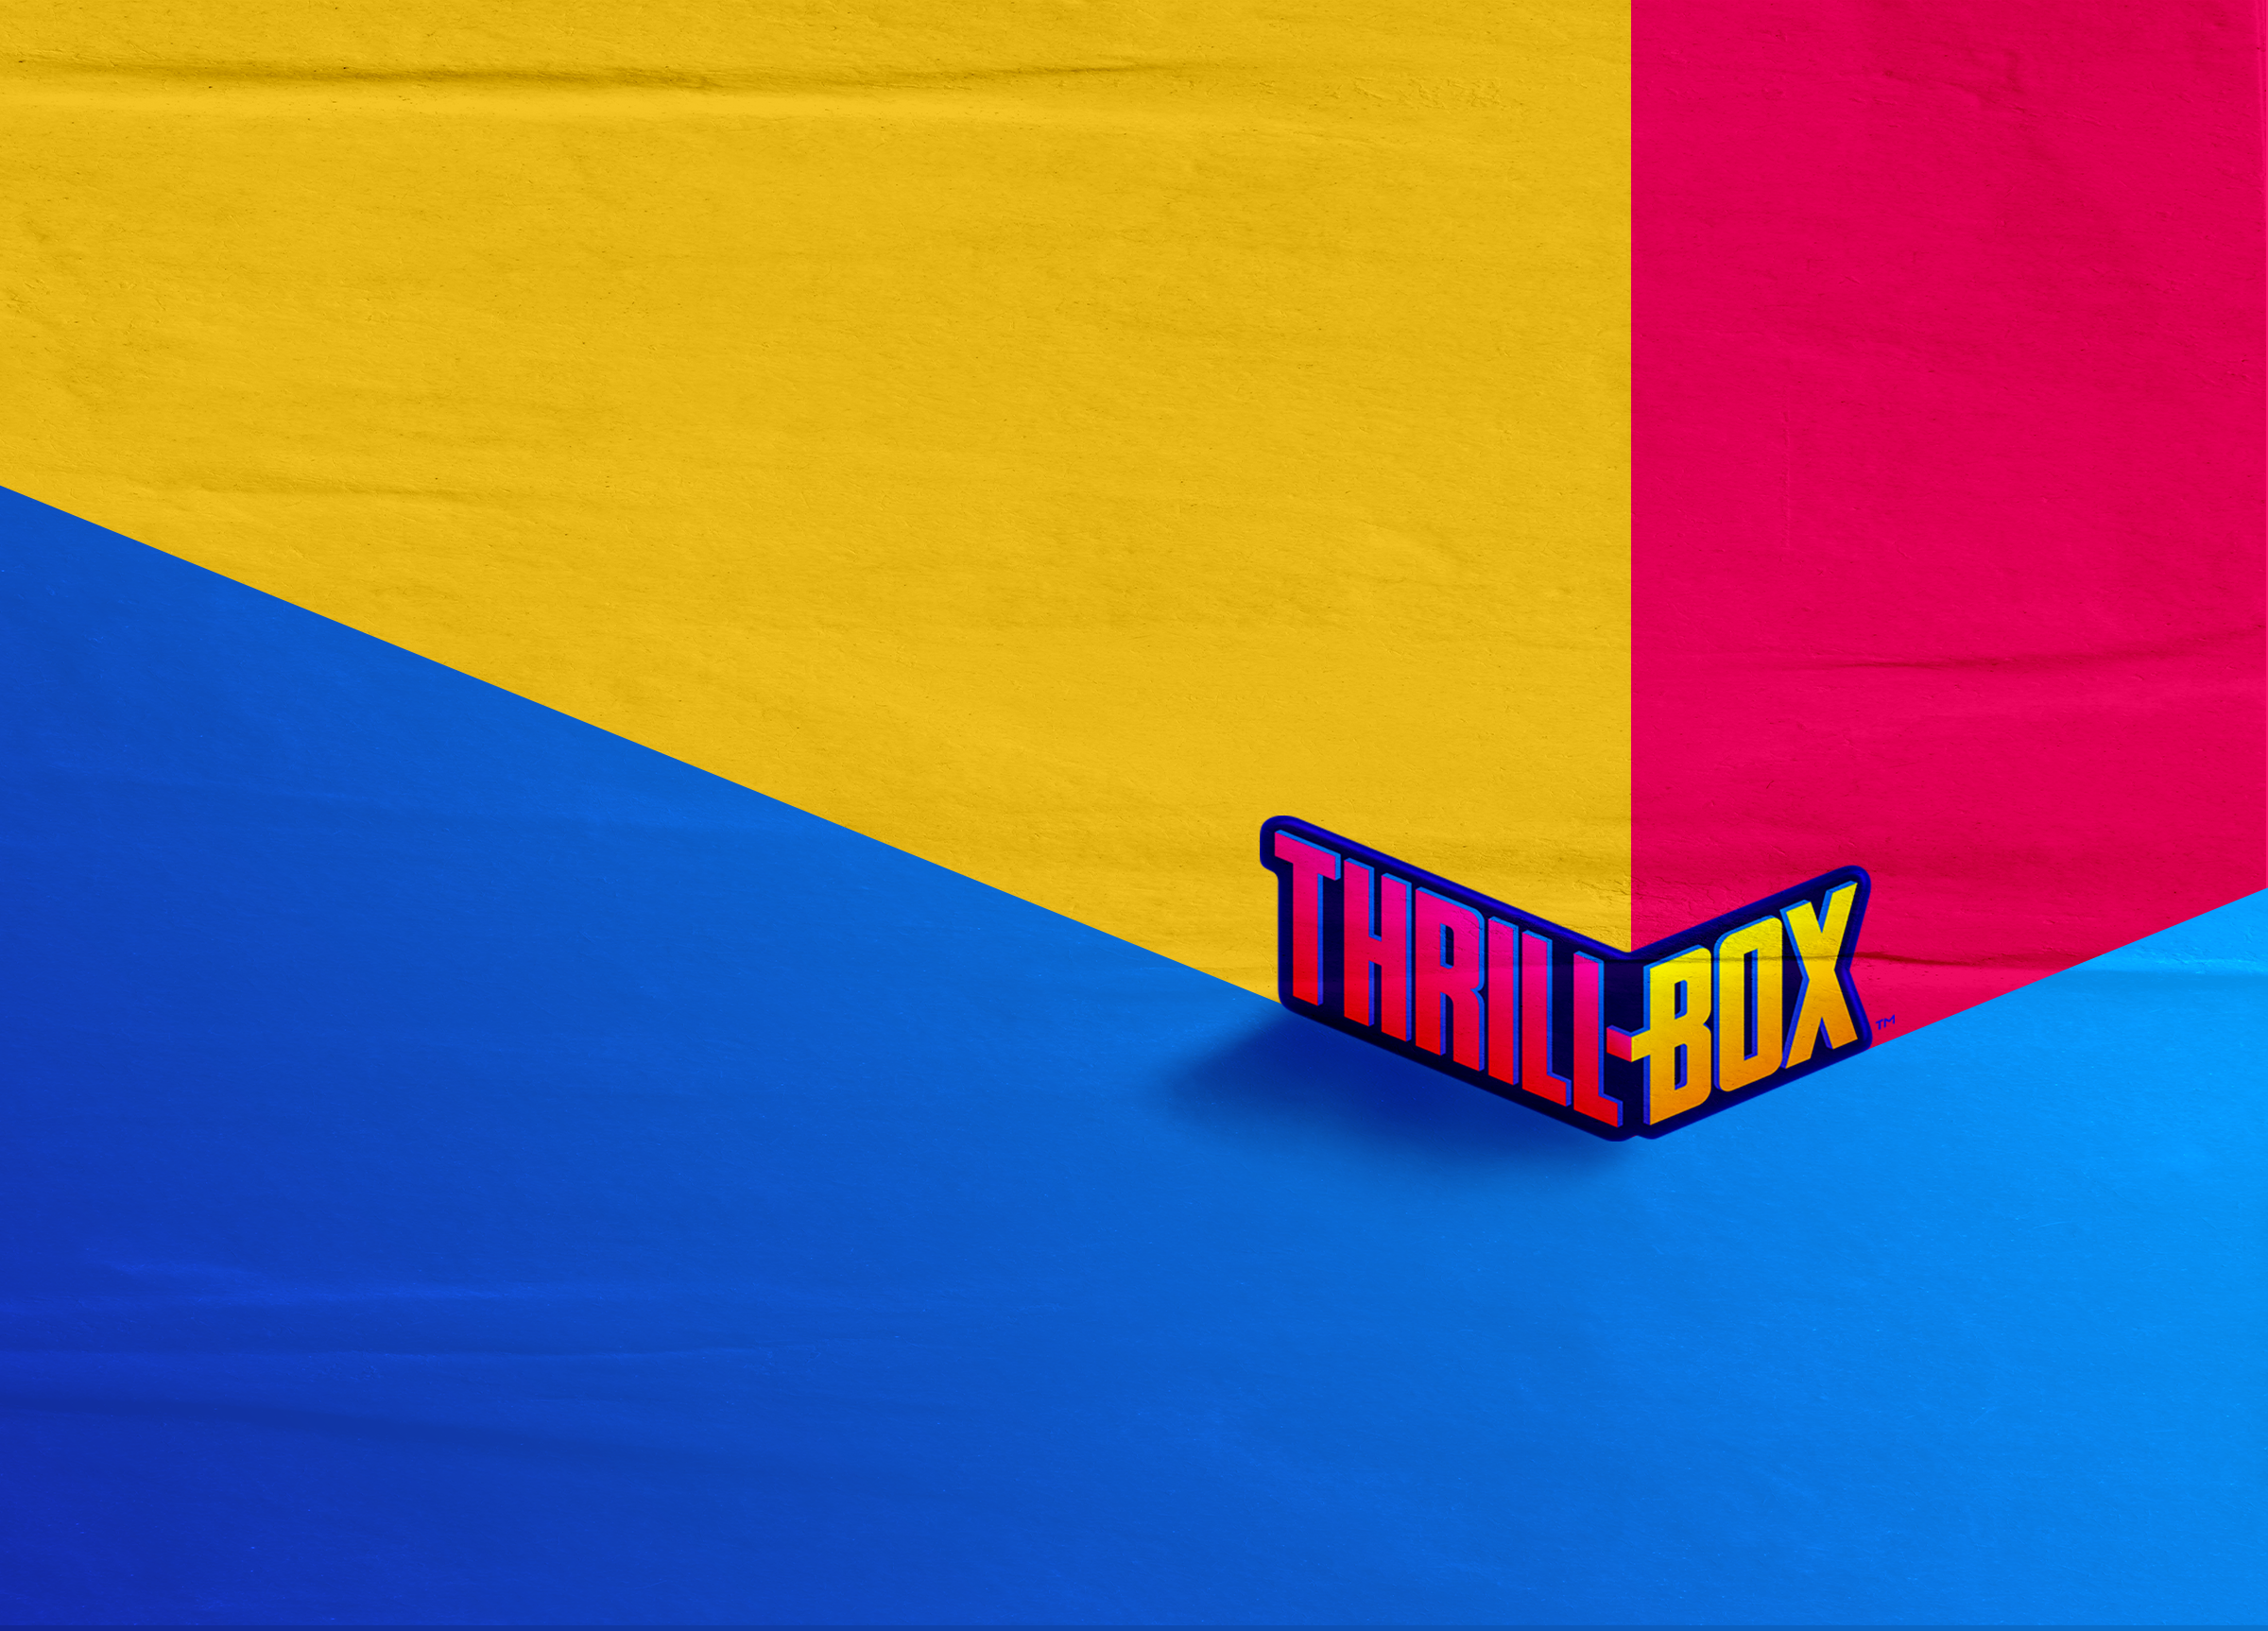 Thrillbox_Social_LogoCorner.png